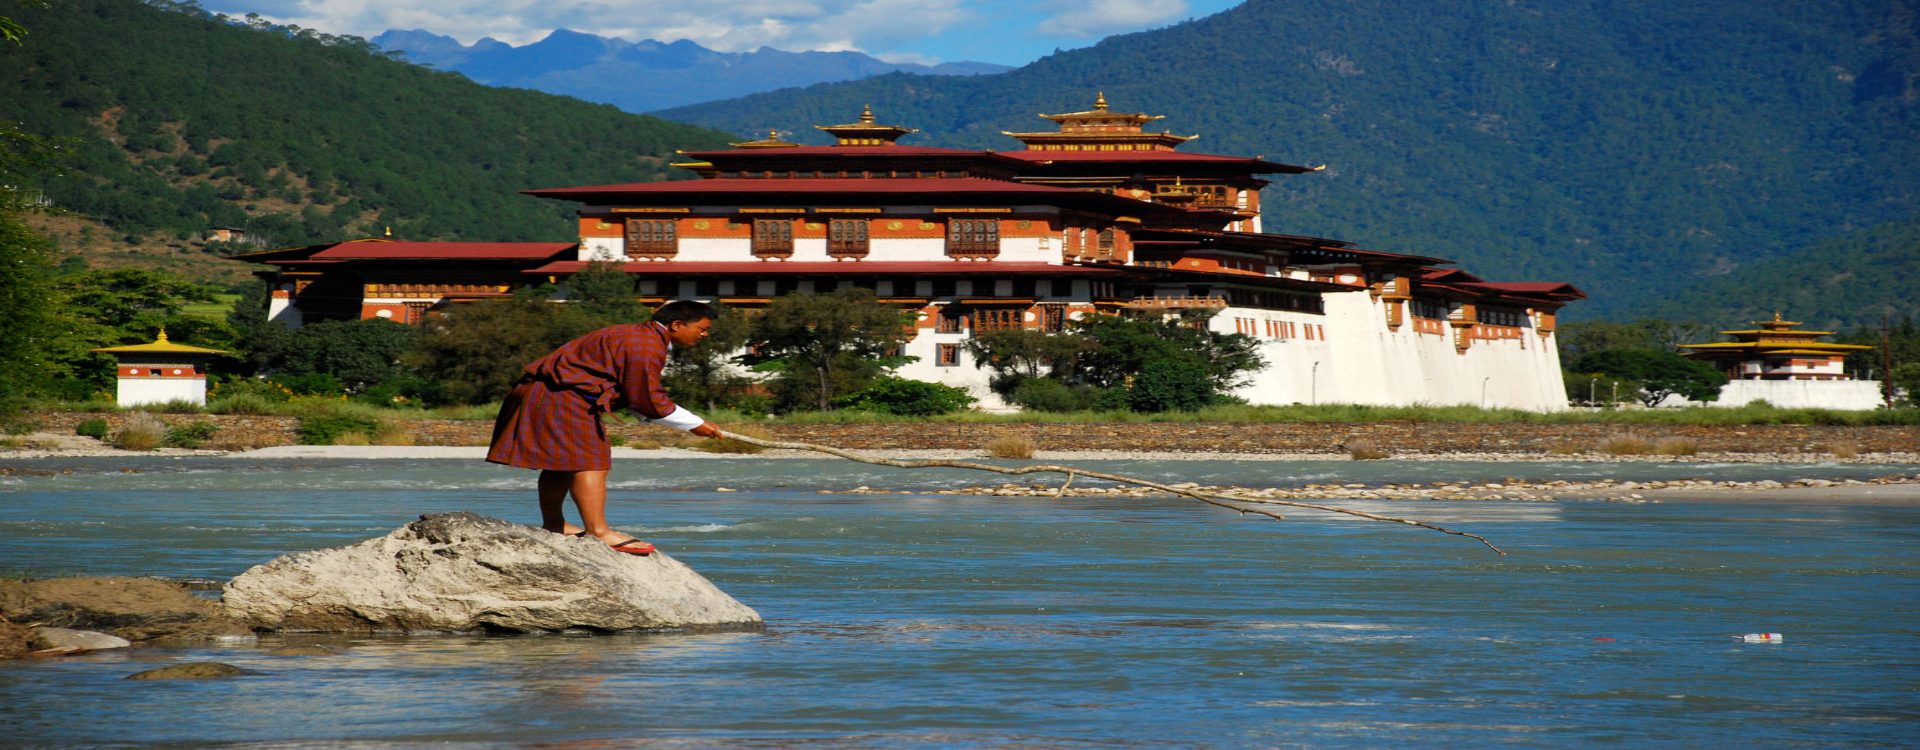 Scenic Nepal Bhutan Tour